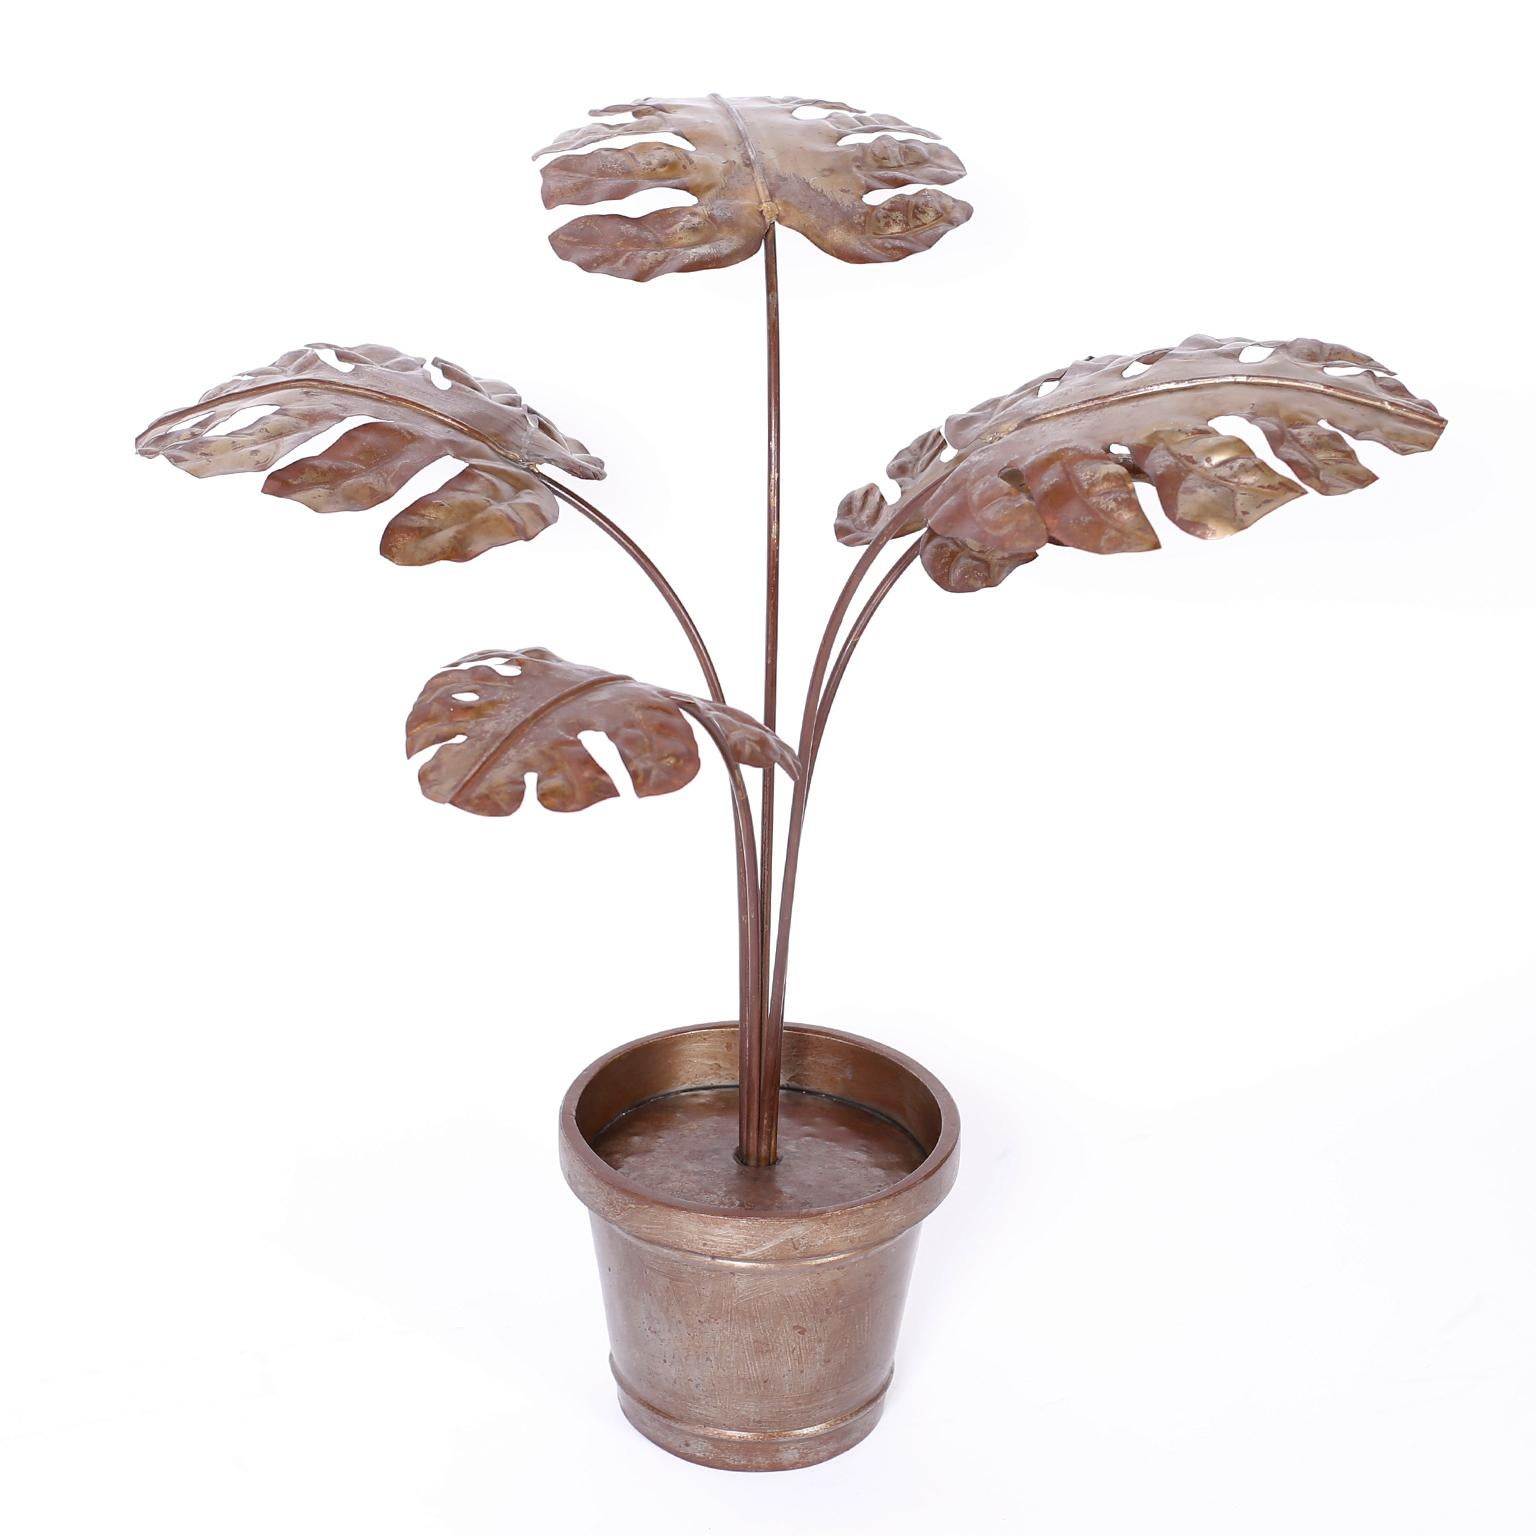 Plante en pot ou sculpture de philodendron chic du milieu du siècle, grandeur nature, fabriquée à la main en métal avec une forme stylisée et une finition oxydée acquise.